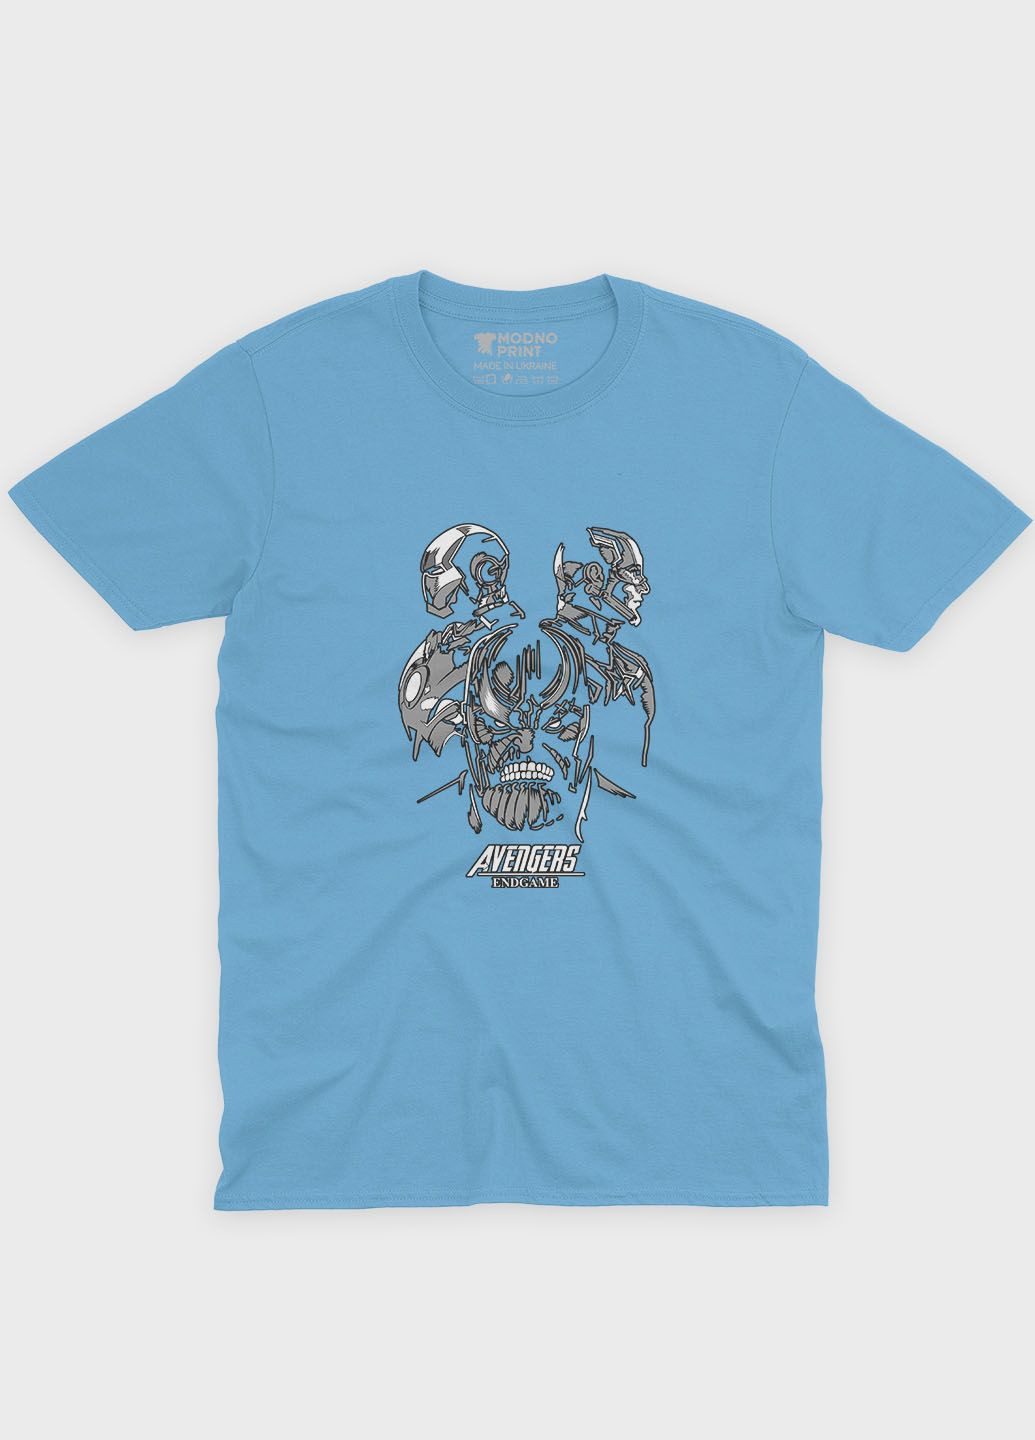 Блакитна демісезонна футболка для дівчинки з принтом супезлодія - танос (ts001-1-lbl-006-019-013-g) Modno